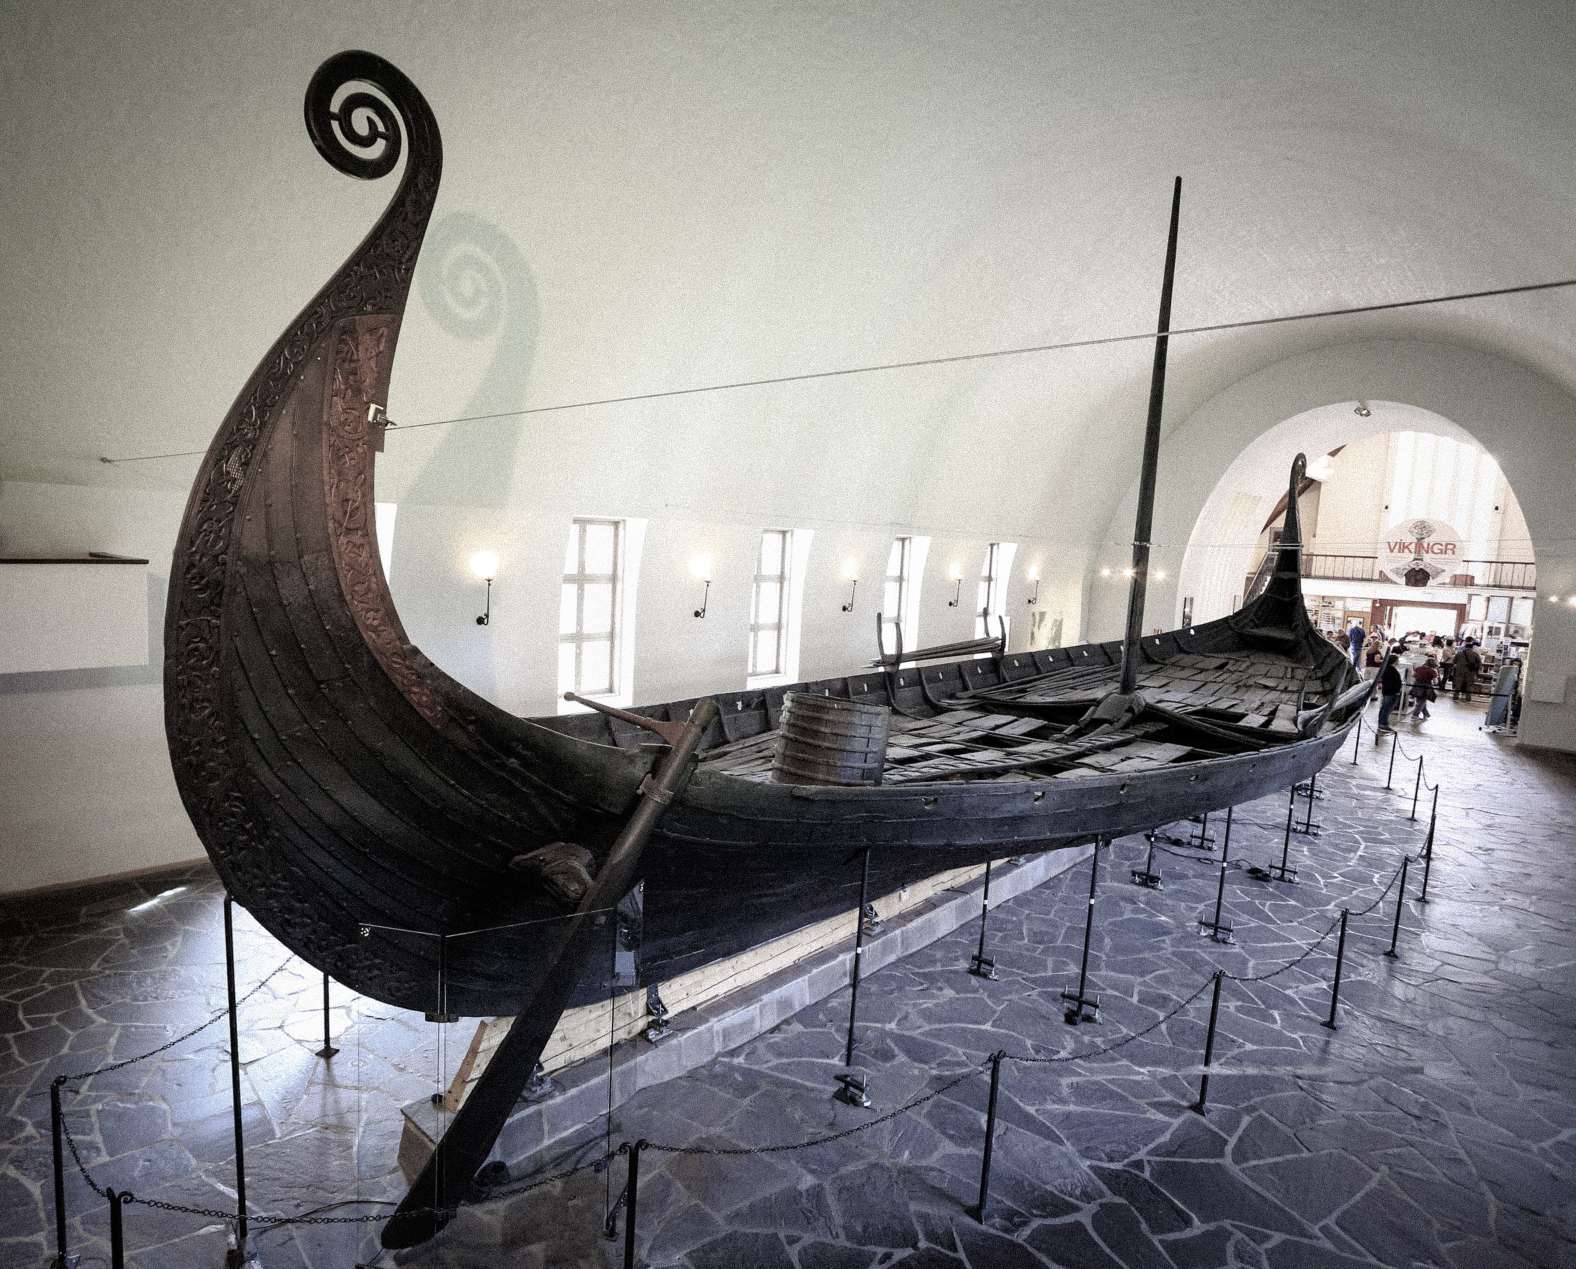 Πλοίο Βίκινγκς στο Μουσείο Πλοίων Βίκινγκ στην πόλη του Όσλο στη Νορβηγία. © Image Credit: Vlad Ghiea | Άδεια χρήσης από το DreamsTime.com (Φωτογραφική Στοκ Φωτογραφία για εκδοτική χρήση, ID: 155282591)